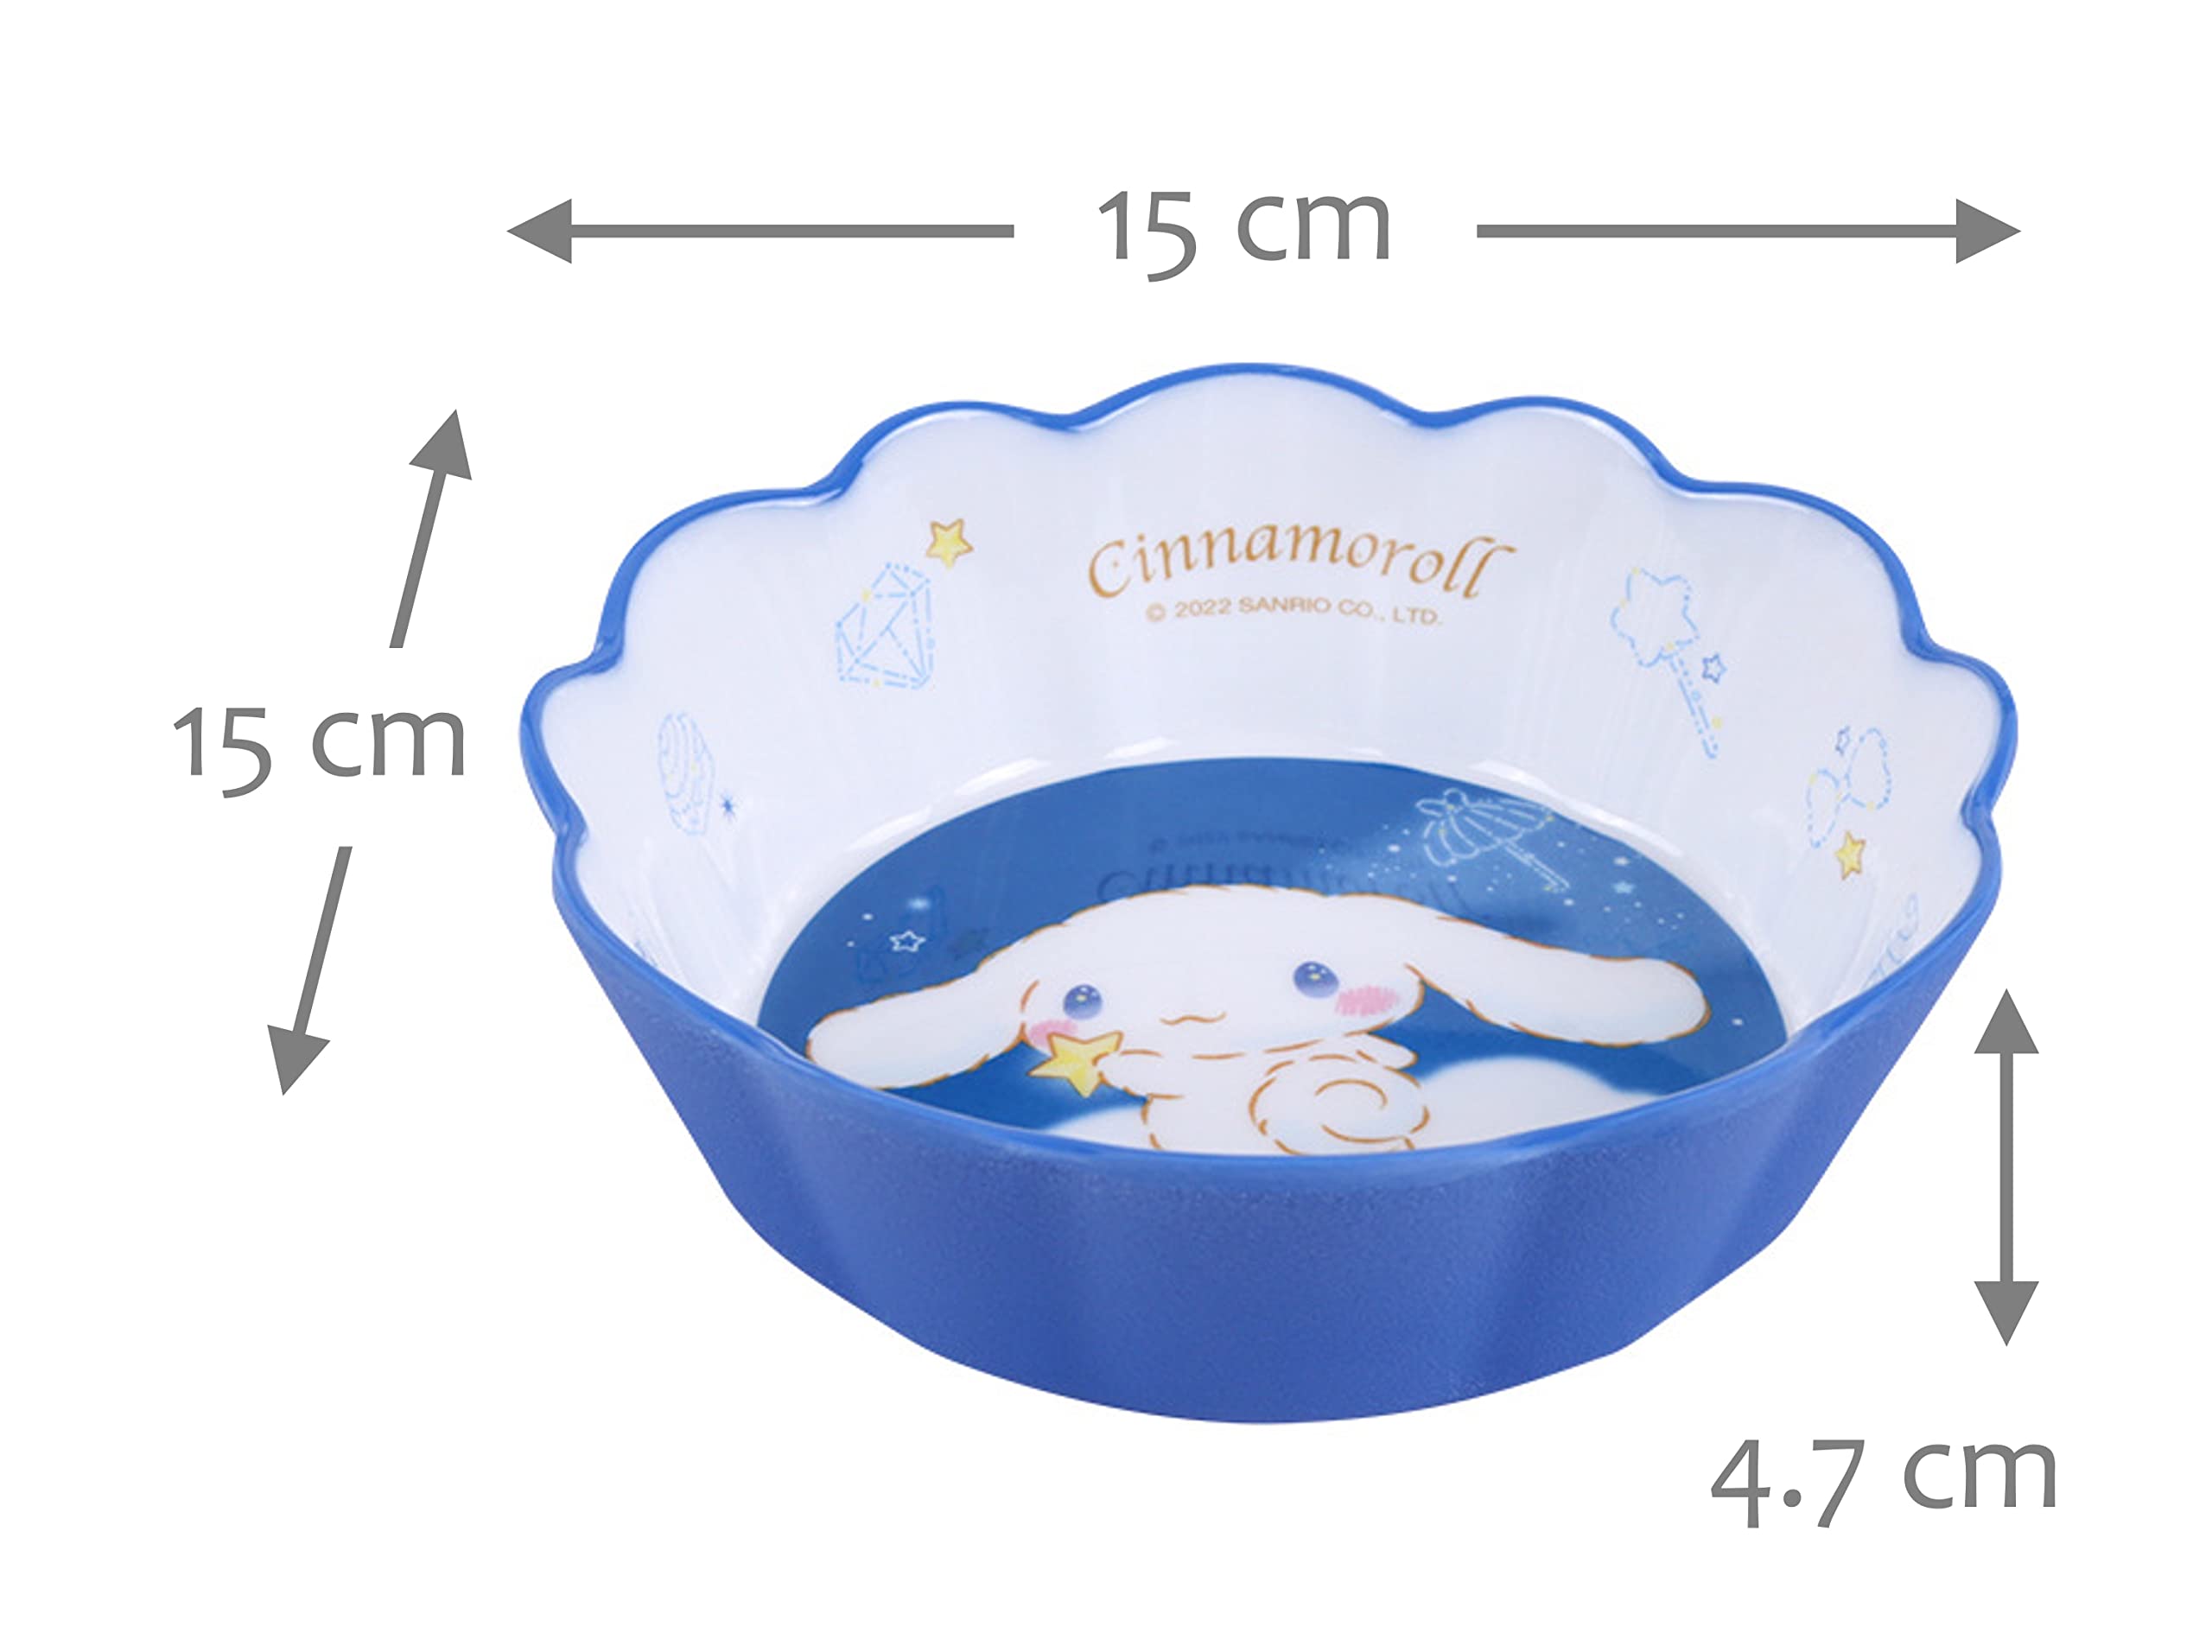 Cinnamoroll Blue Dinnerware Flatware Meal Set – Plate Bowl Cup Spoon, 4 pieces